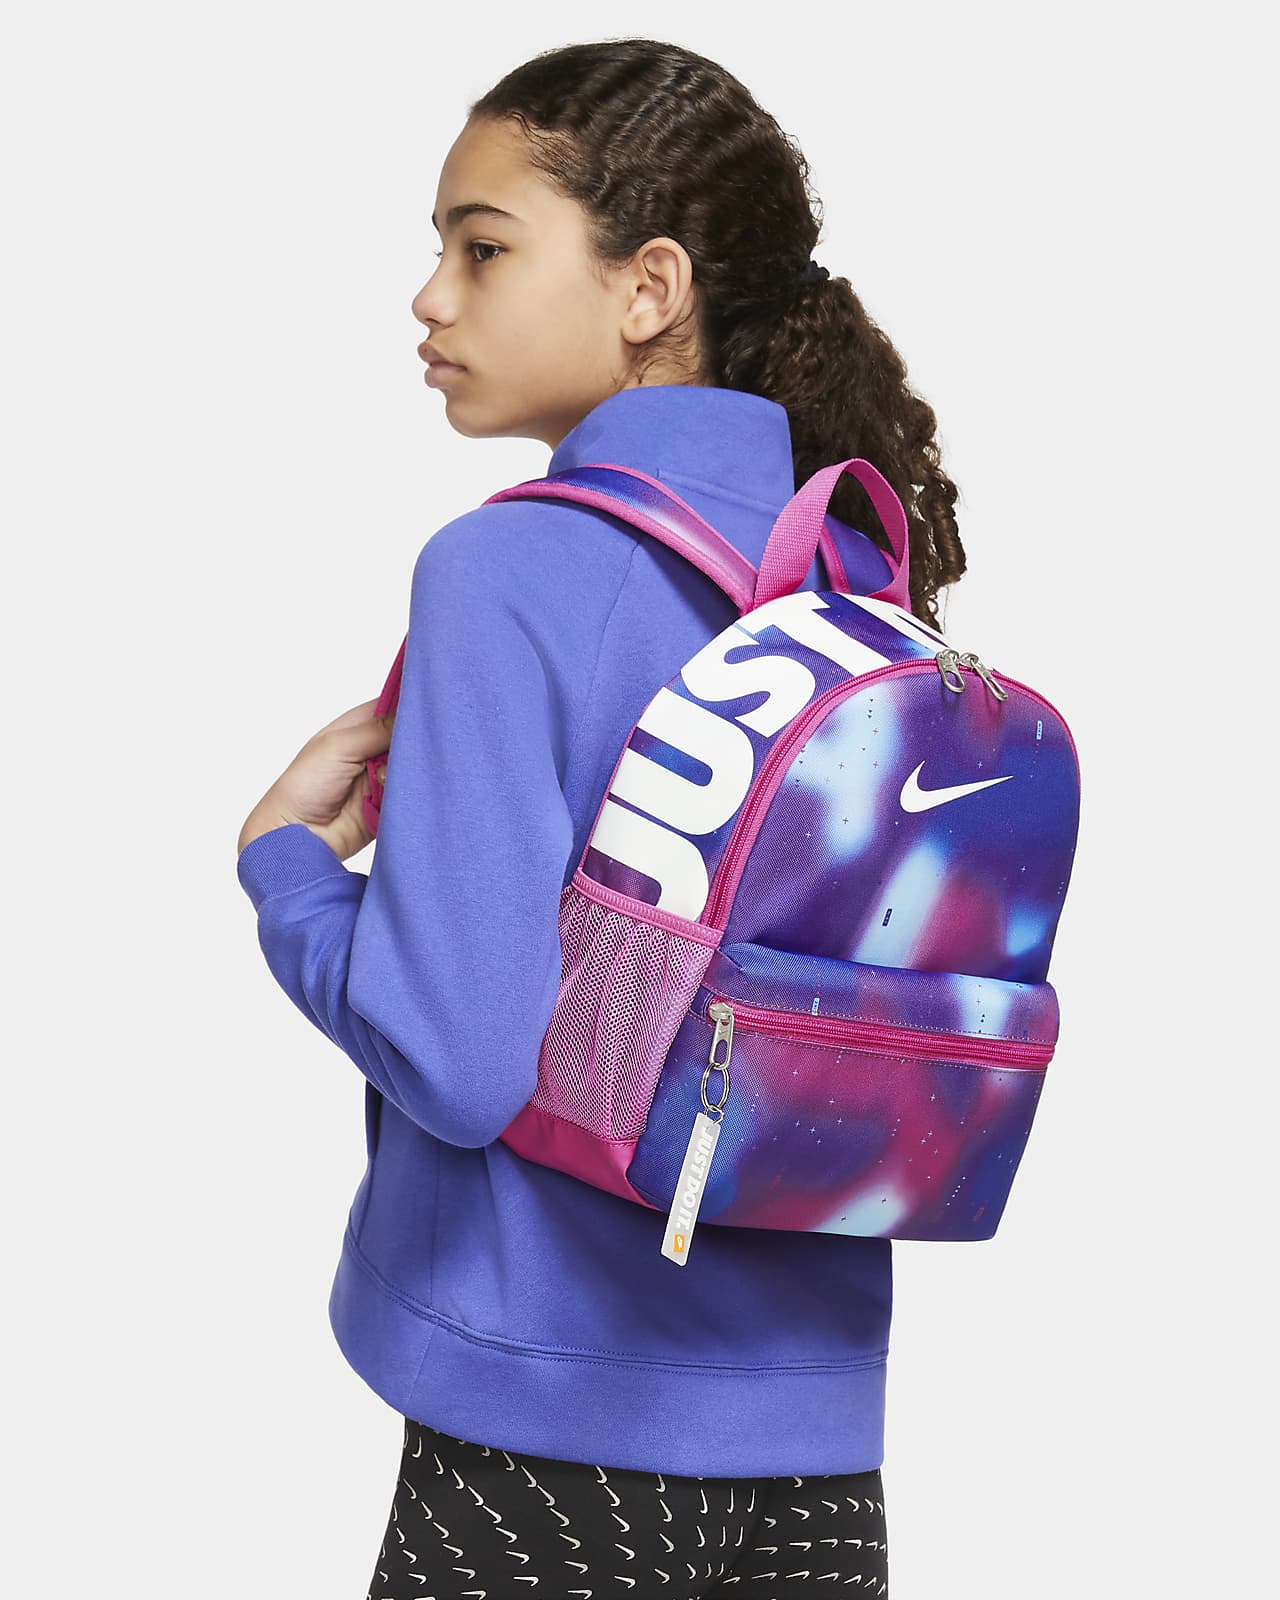 Nike Brasilia JDI Kids' Mini Backpack 